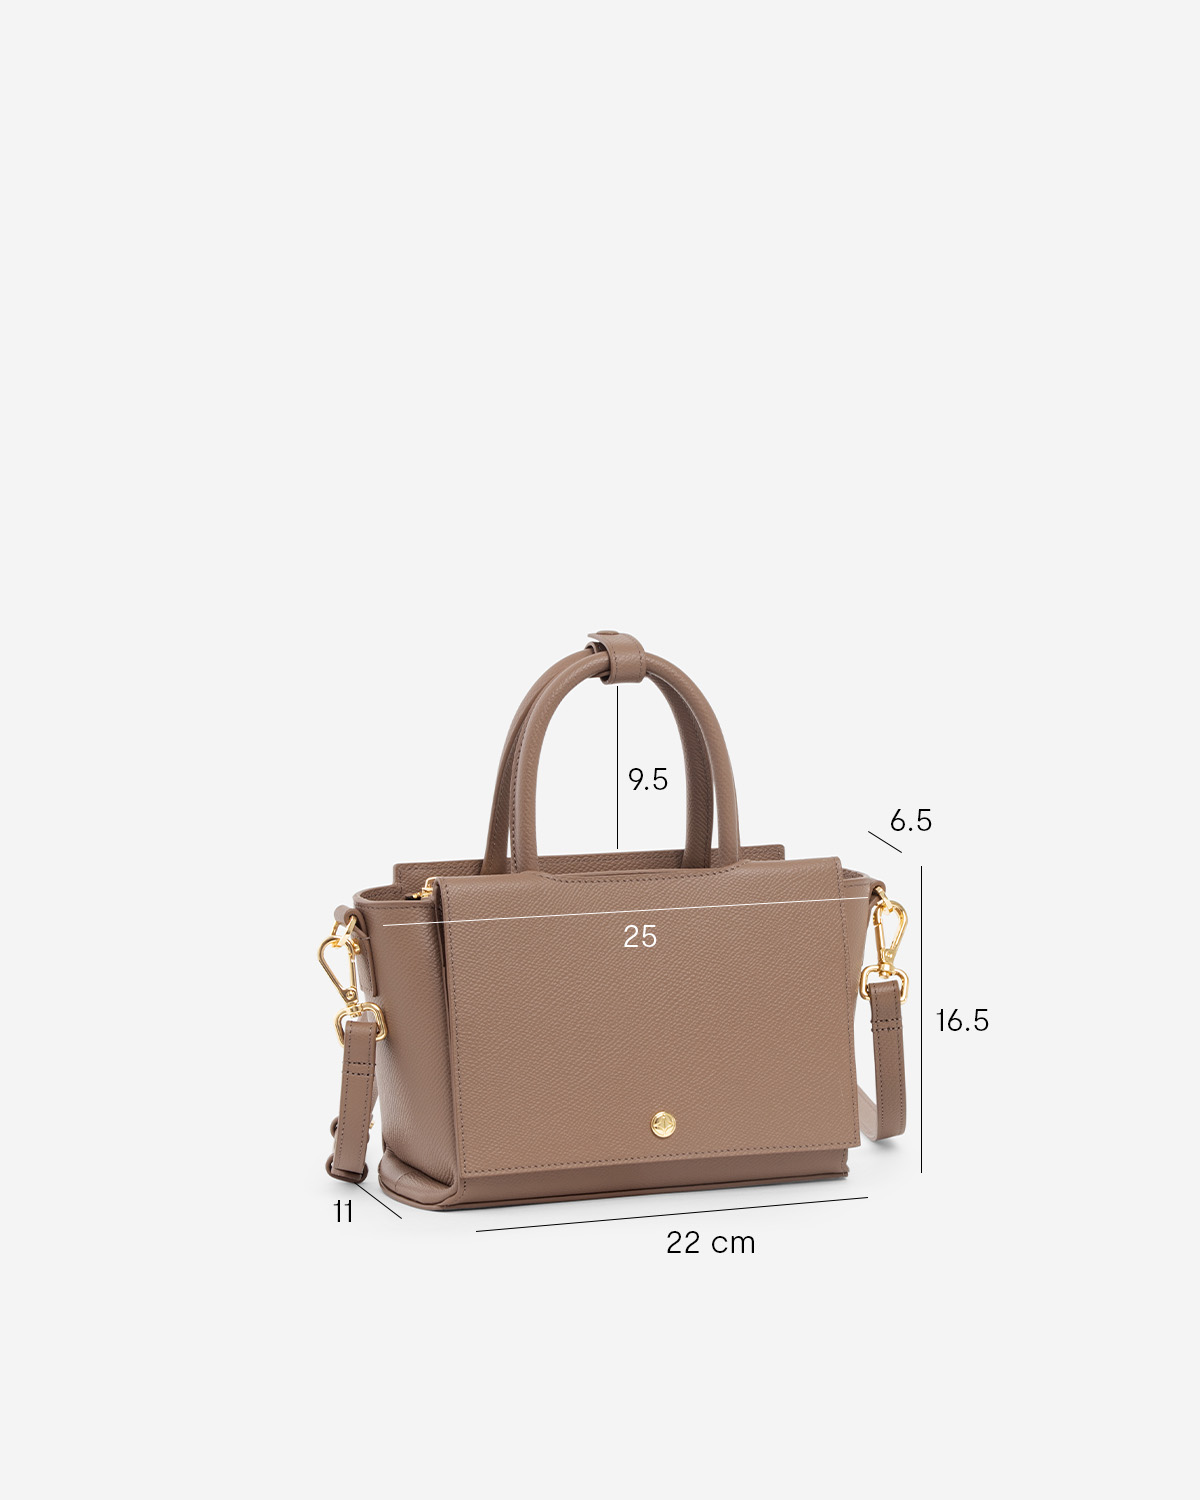 กระเป๋าถือหนังแท้ VERA Heidi Leather Handbag, ไซส์ 22 สี Wood Rose